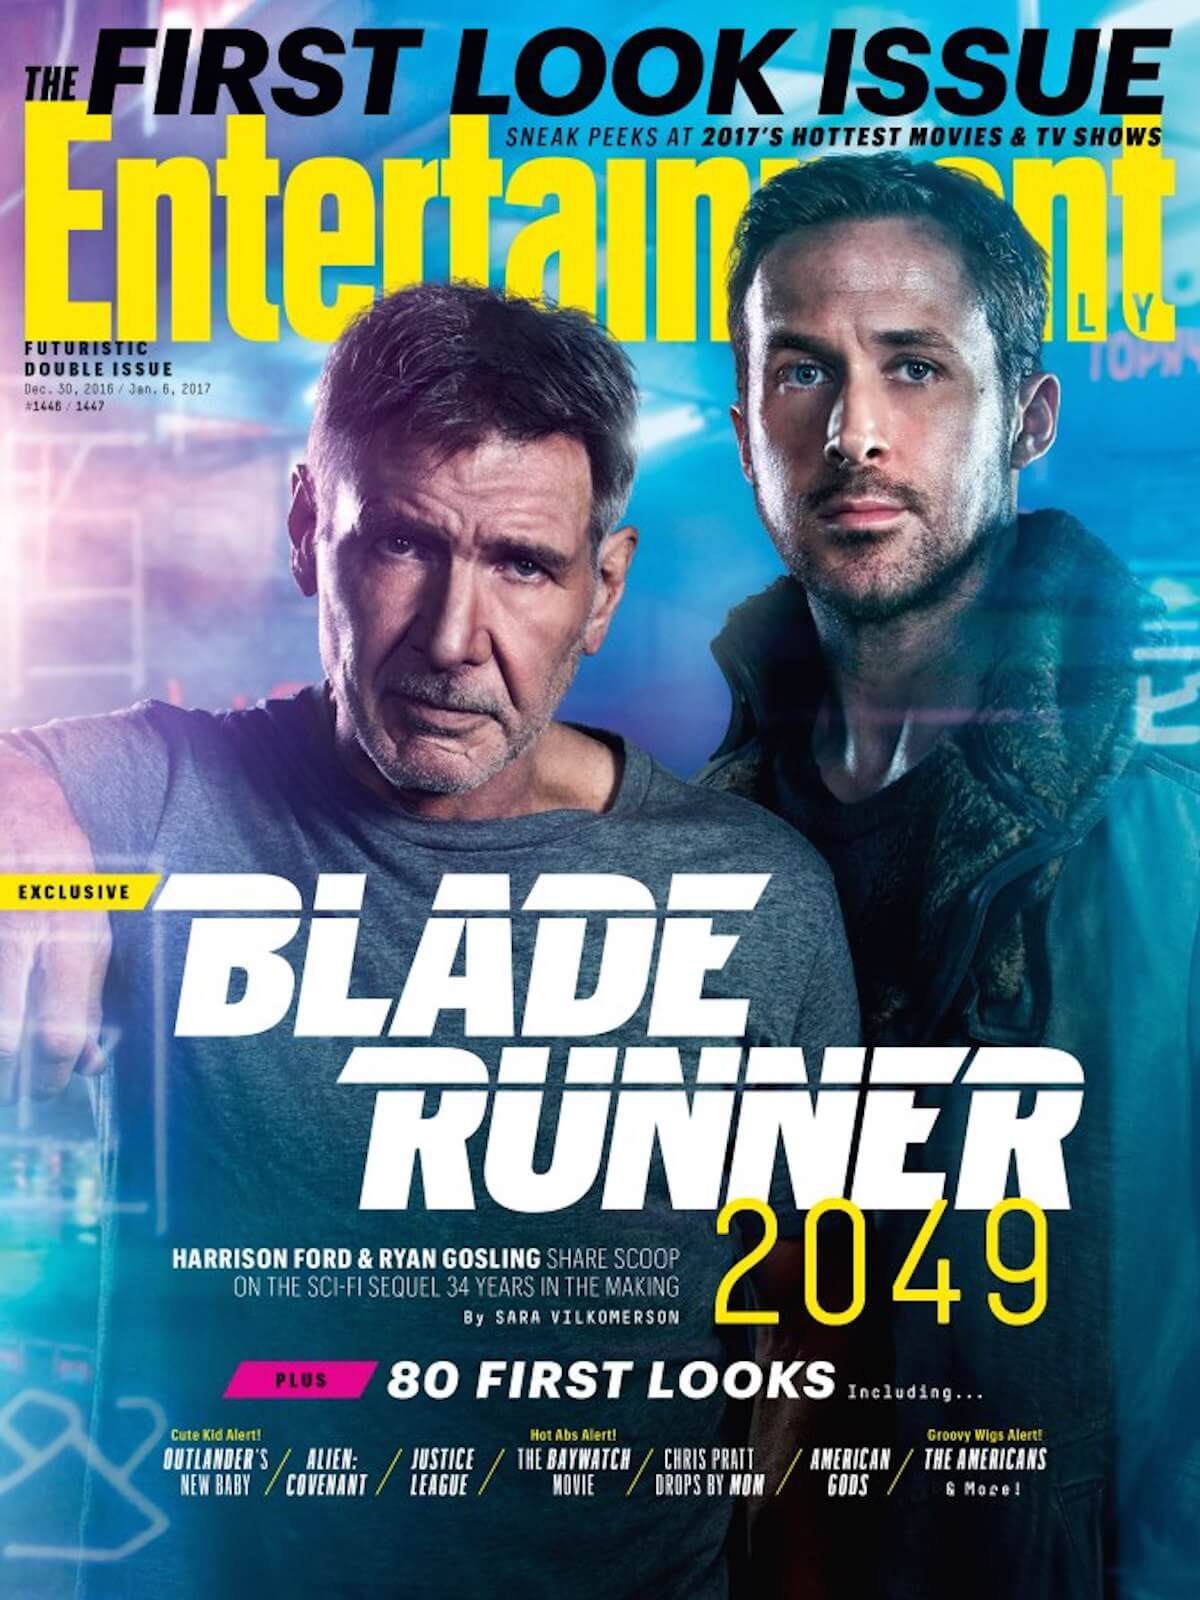 Blade runner 2049 ew cover